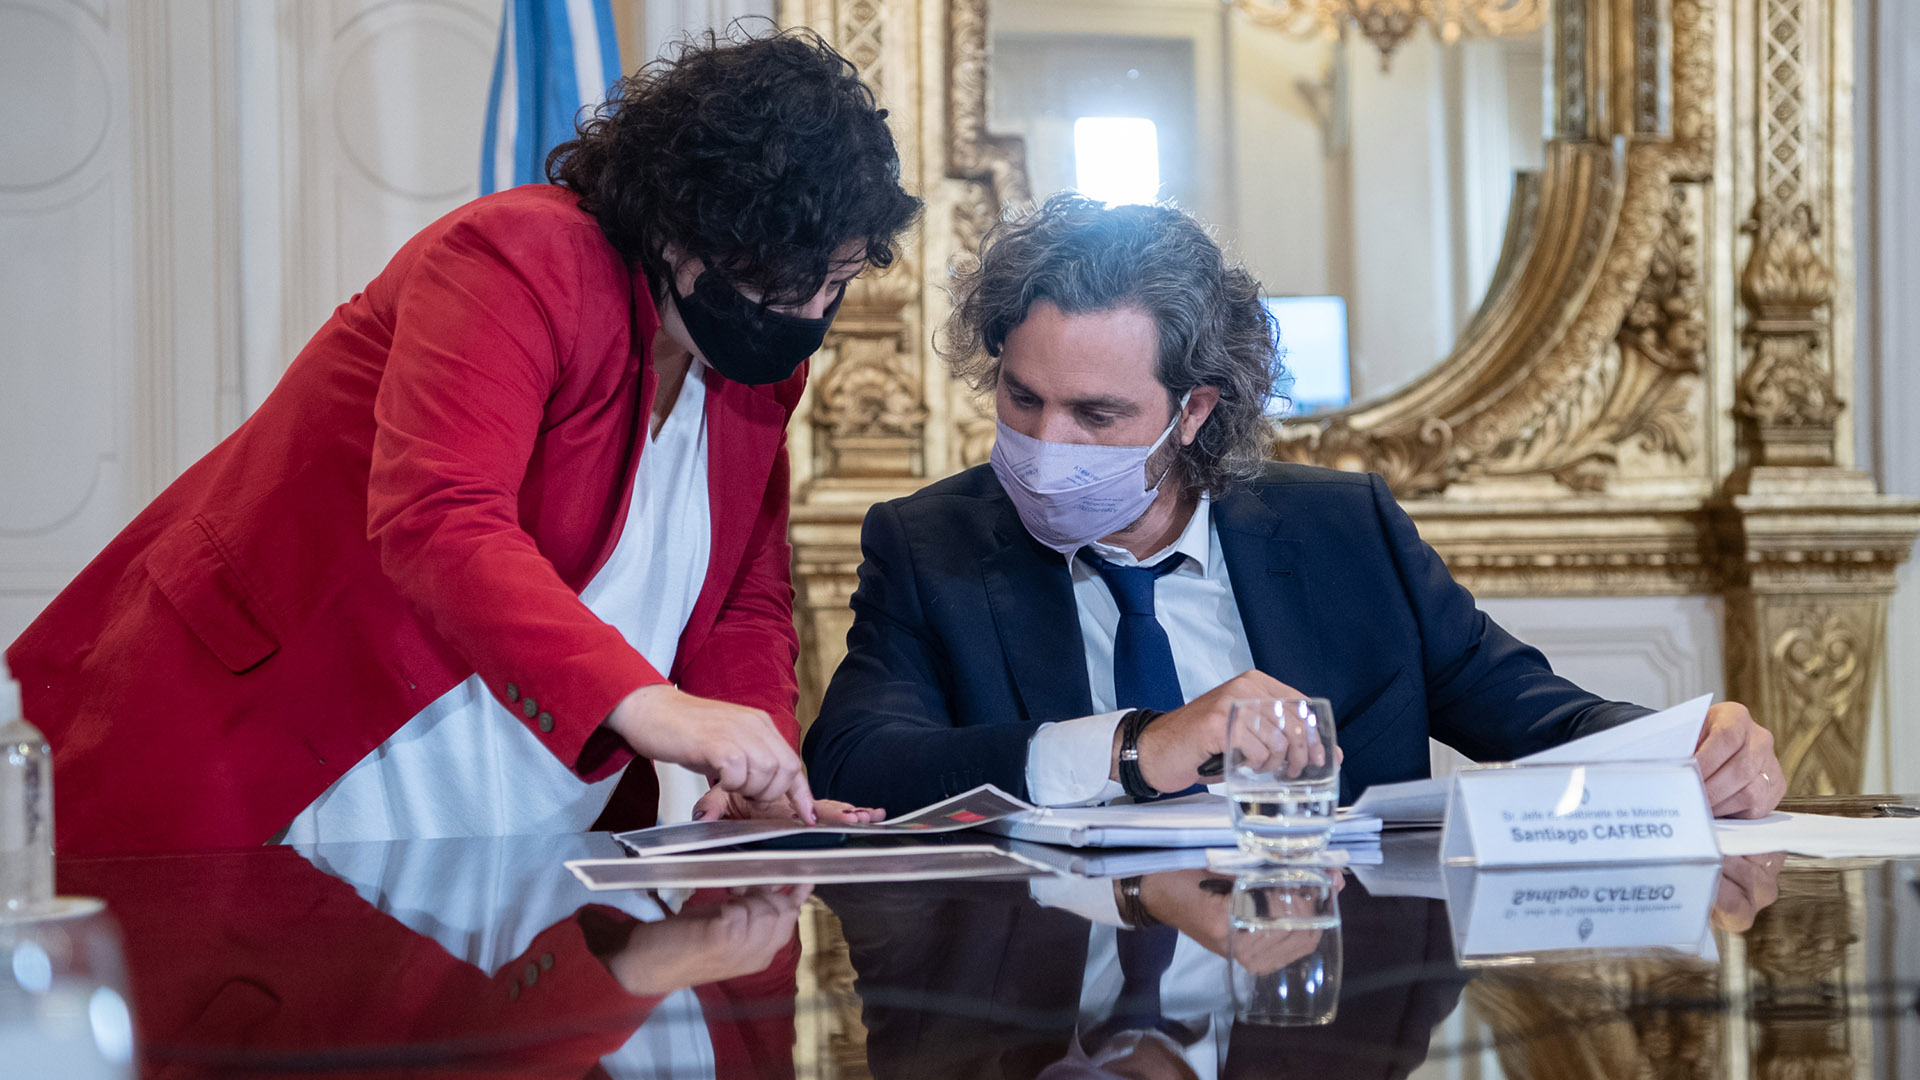 La ministra de Salud, Carla Vizzotti, junto al jefe de Gabinete, Santiago Cafiero durante la reunión en la Casa Rosada